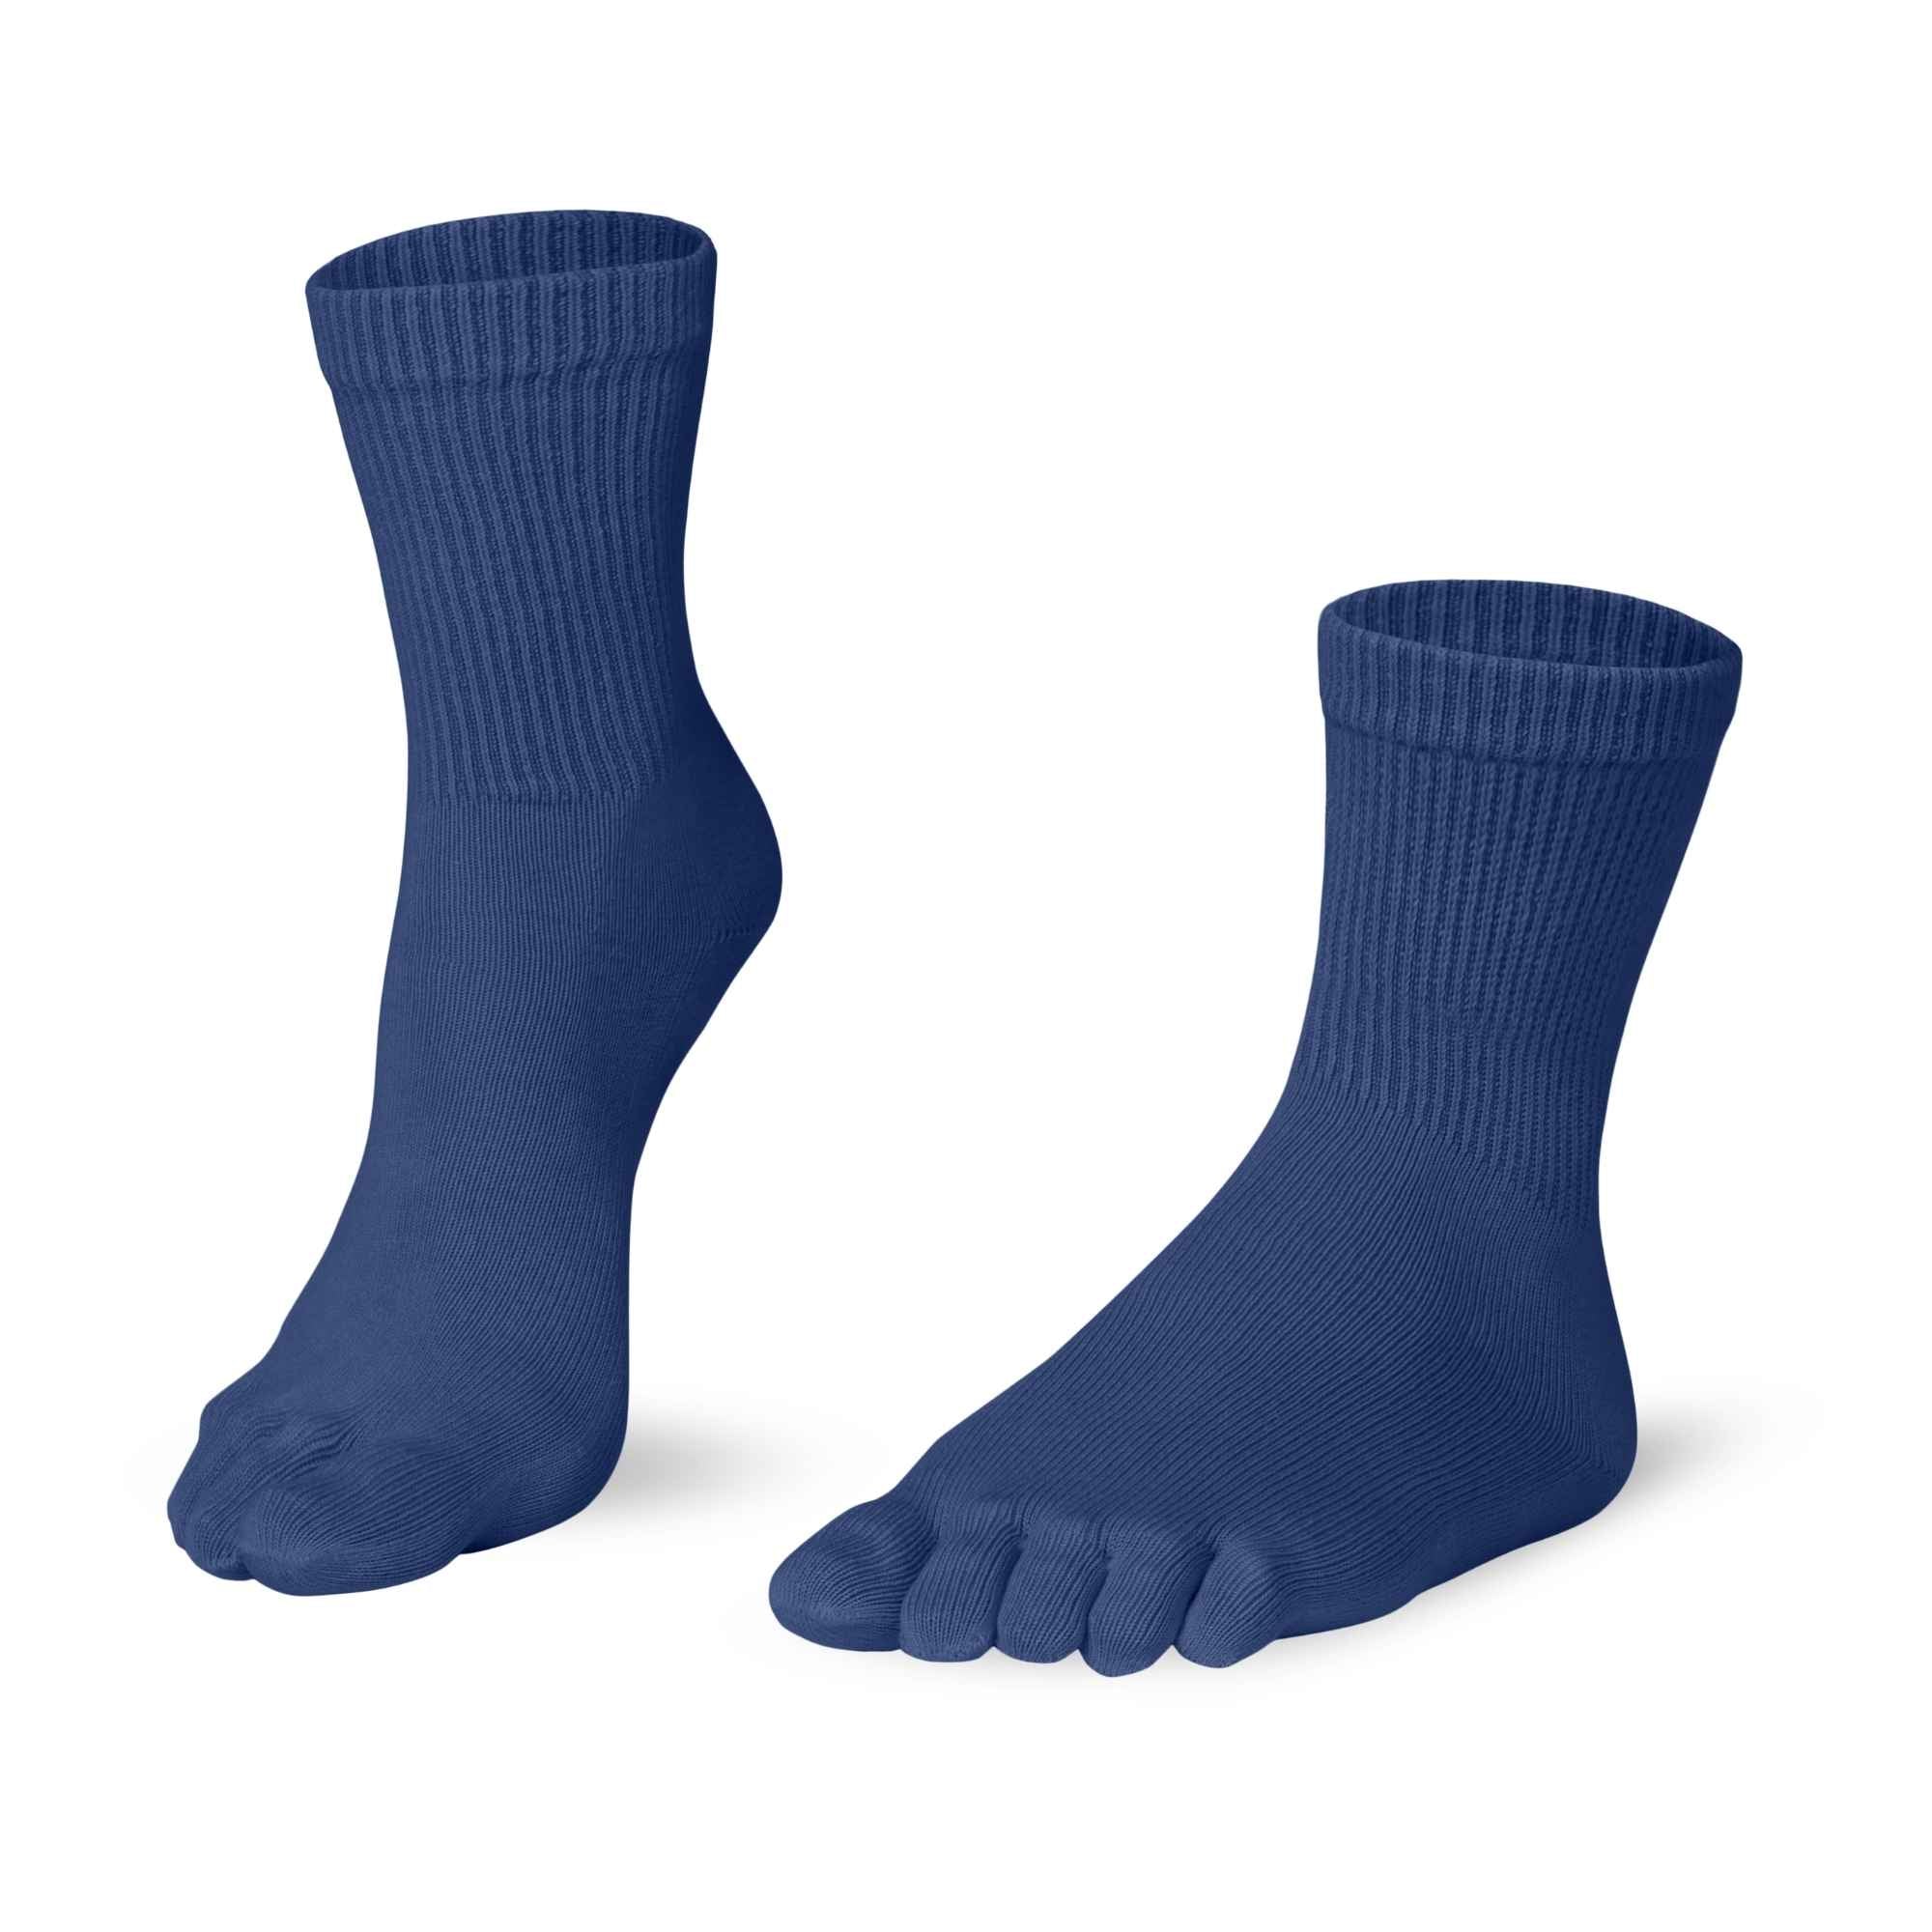 Knitido Essentials Relax longueur mollet confortchaussettes à orteils, couleur bleue